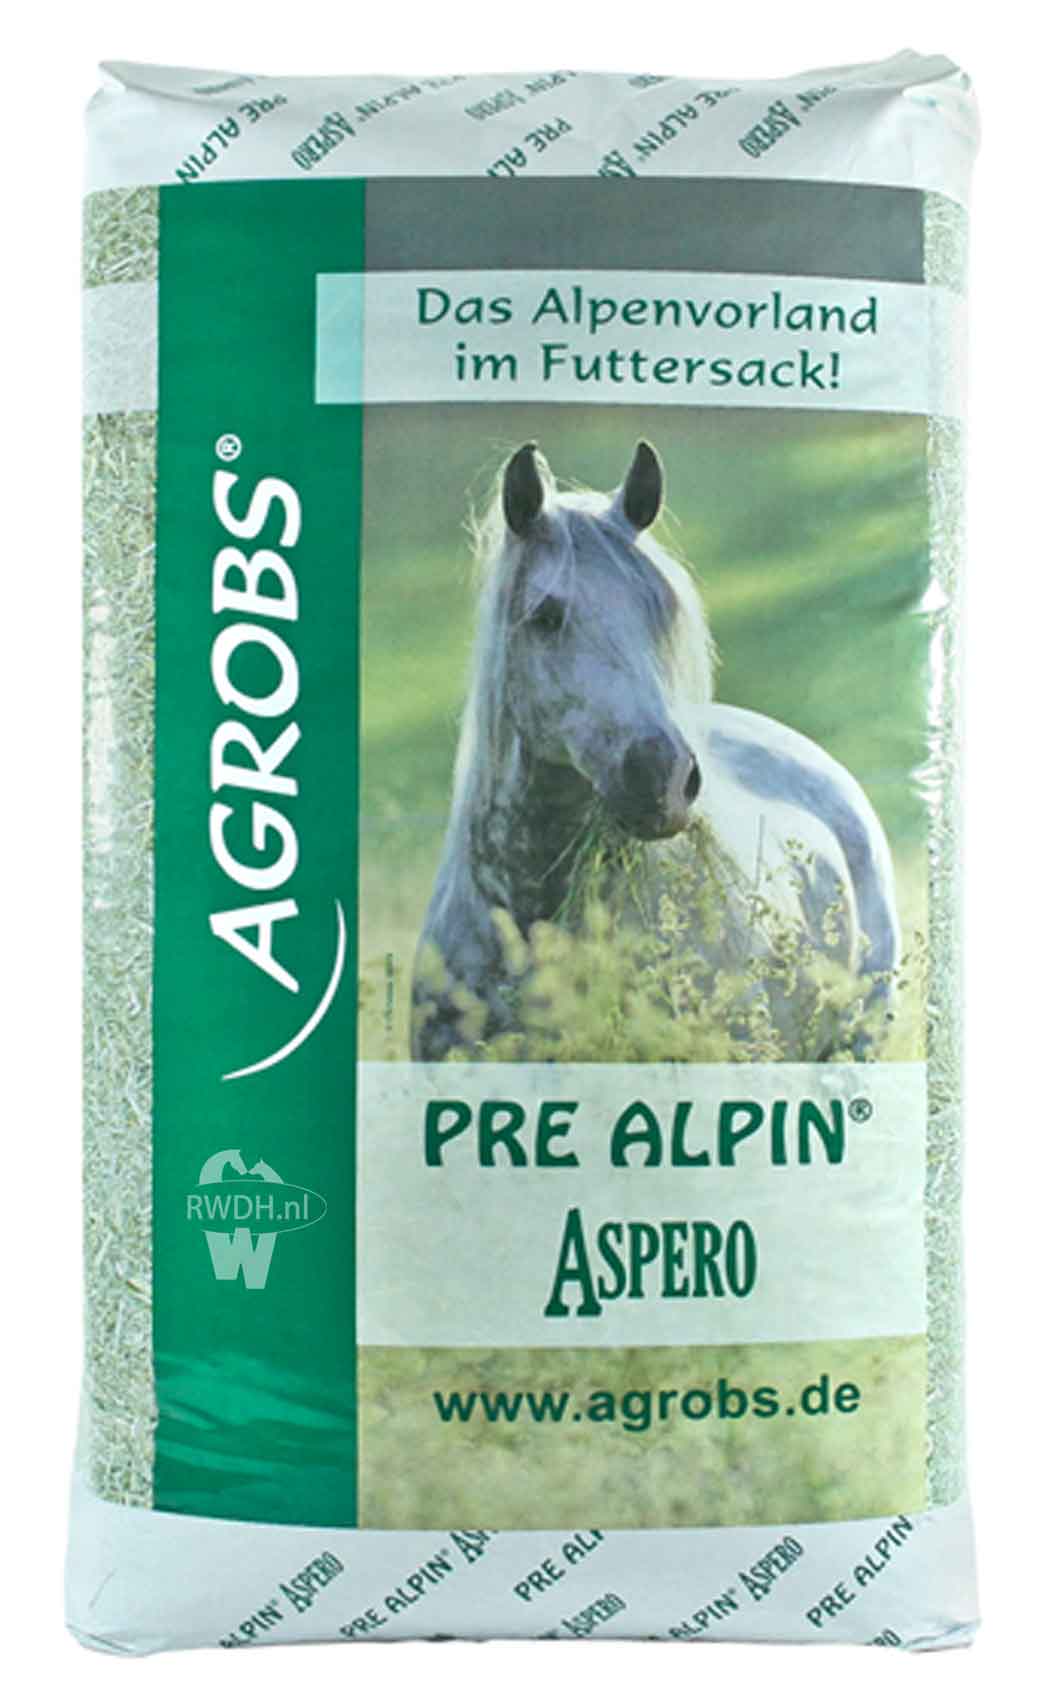 agrobs pre alpin aspero